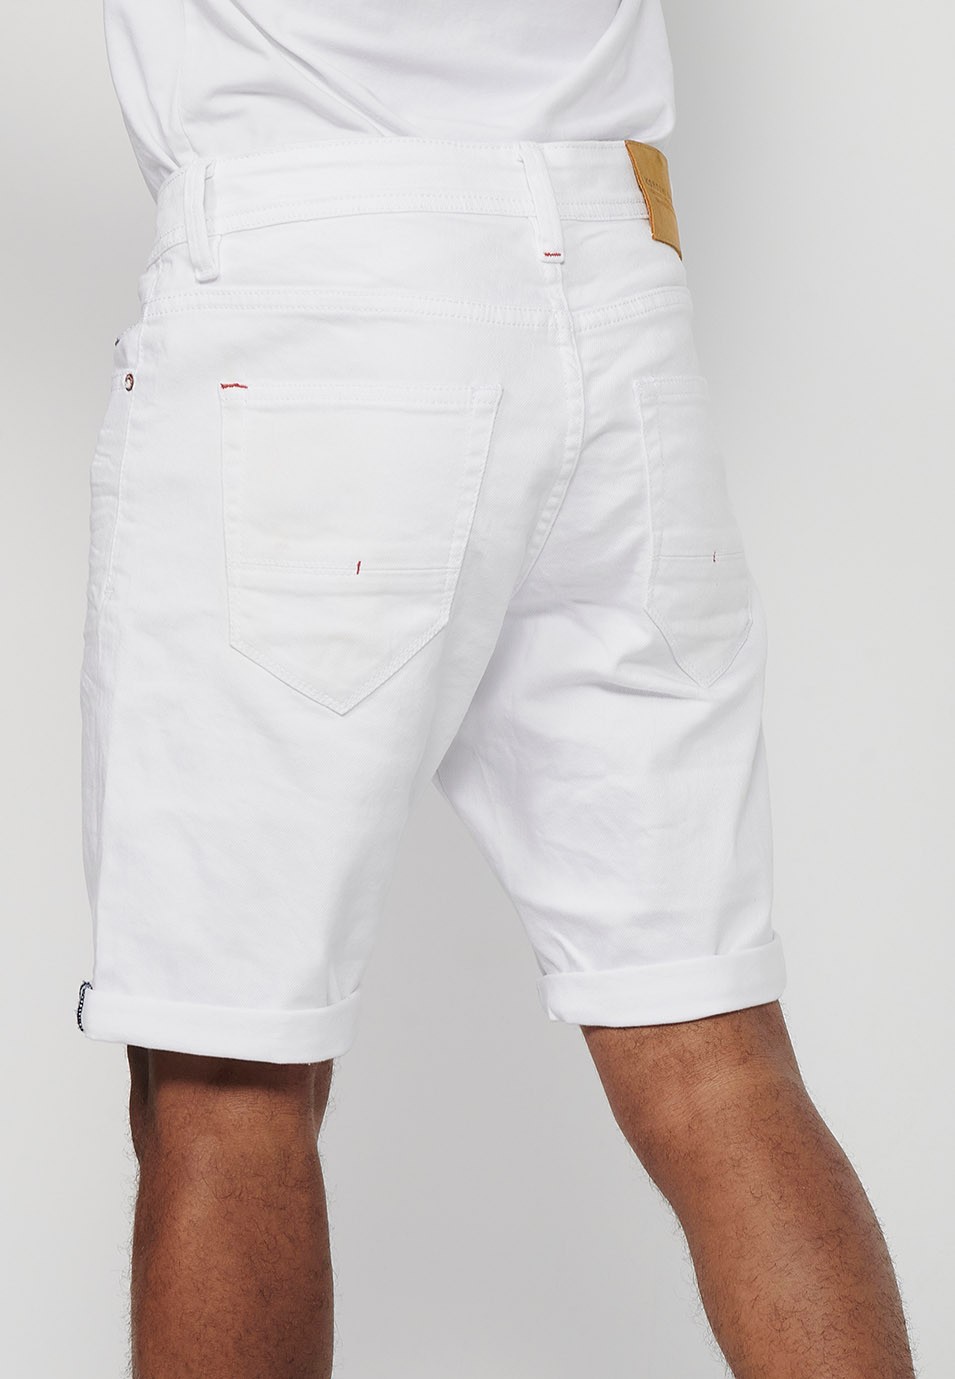 Pantalons curts Bermuda Vaquera amb acabat en volta i Tancament davanter amb cremallera i botó de Color Blanc per a Home 8